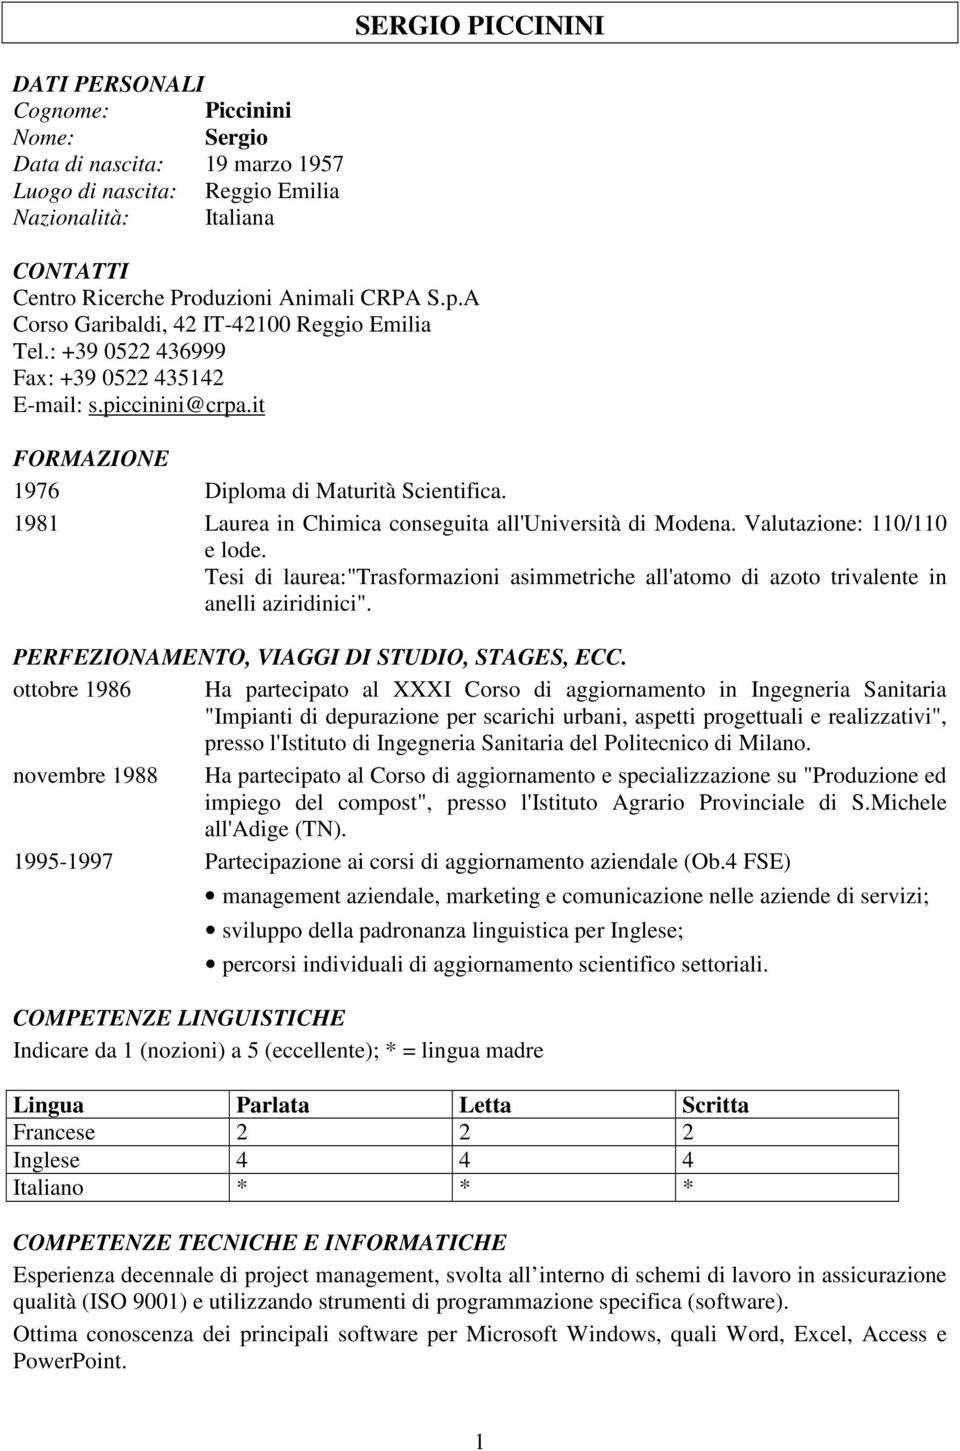 1981 Laurea in Chimica conseguita all'università di Modena. Valutazione: 110/110 e lode. Tesi di laurea:"trasformazioni asimmetriche all'atomo di azoto trivalente in anelli aziridinici".